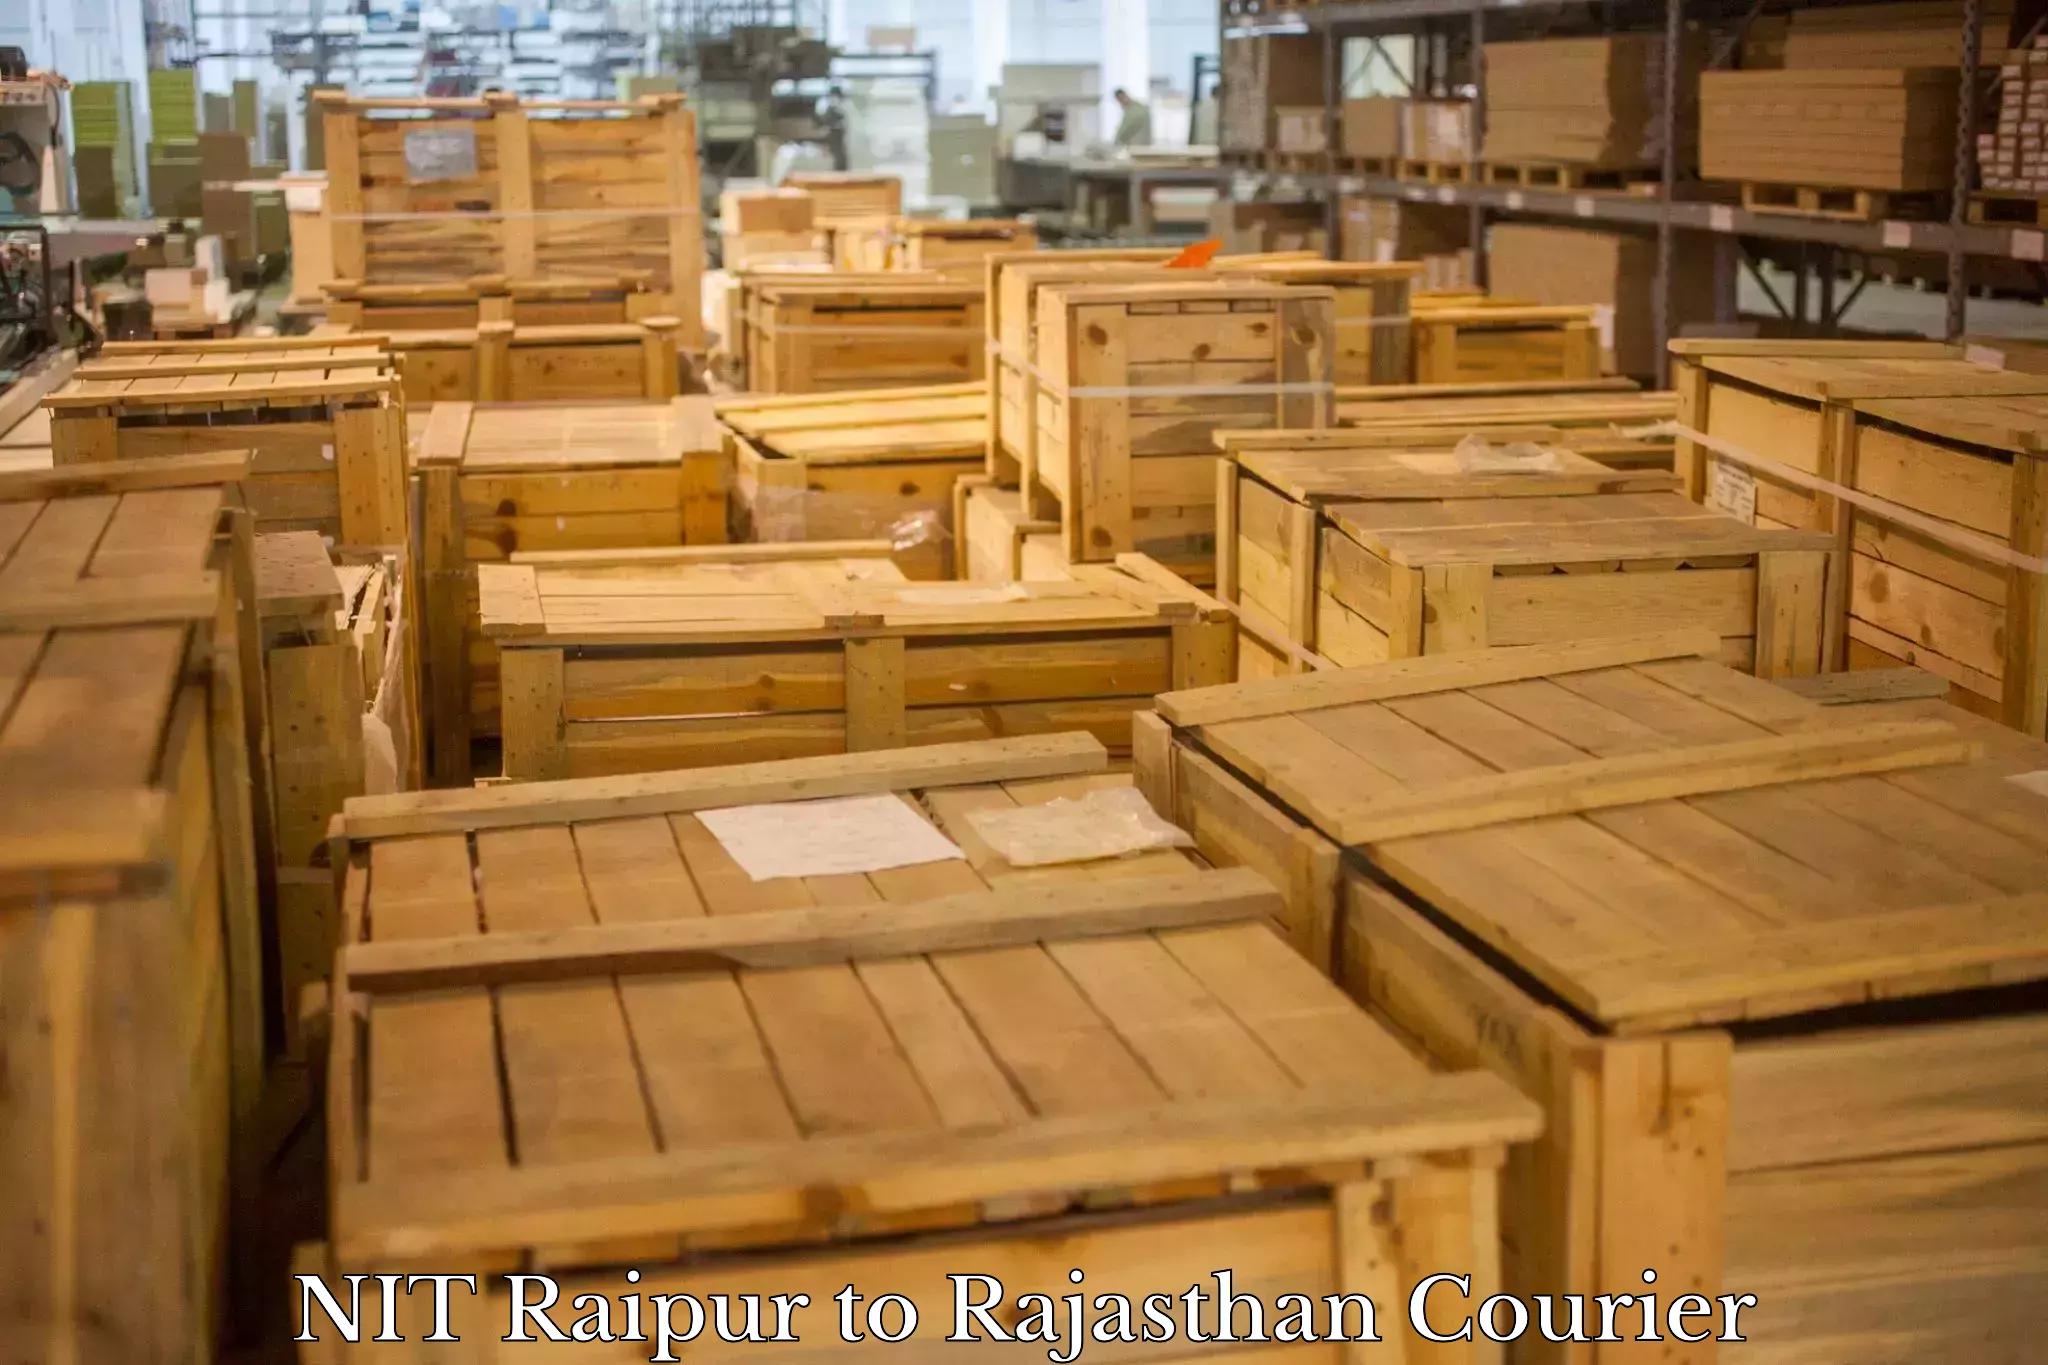 Express package handling NIT Raipur to Kota